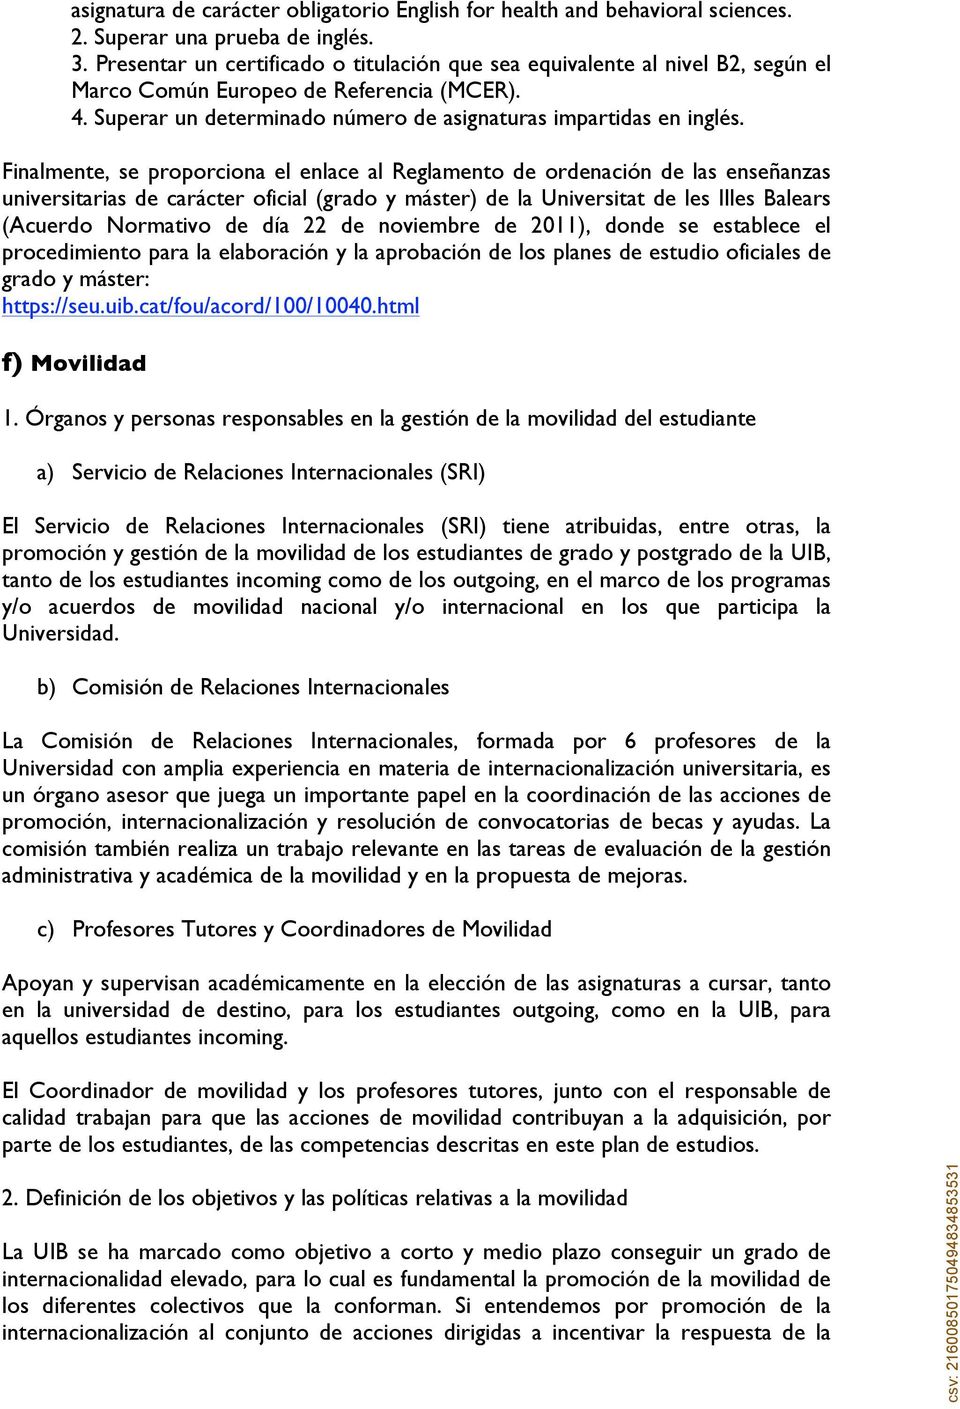 Finalmente, se proporciona el enlace al Reglamento de ordenación de las enseñanzas universitarias de carácter oficial (grado y máster) de la Universitat de les Illes Balears (Acuerdo Normativo de día